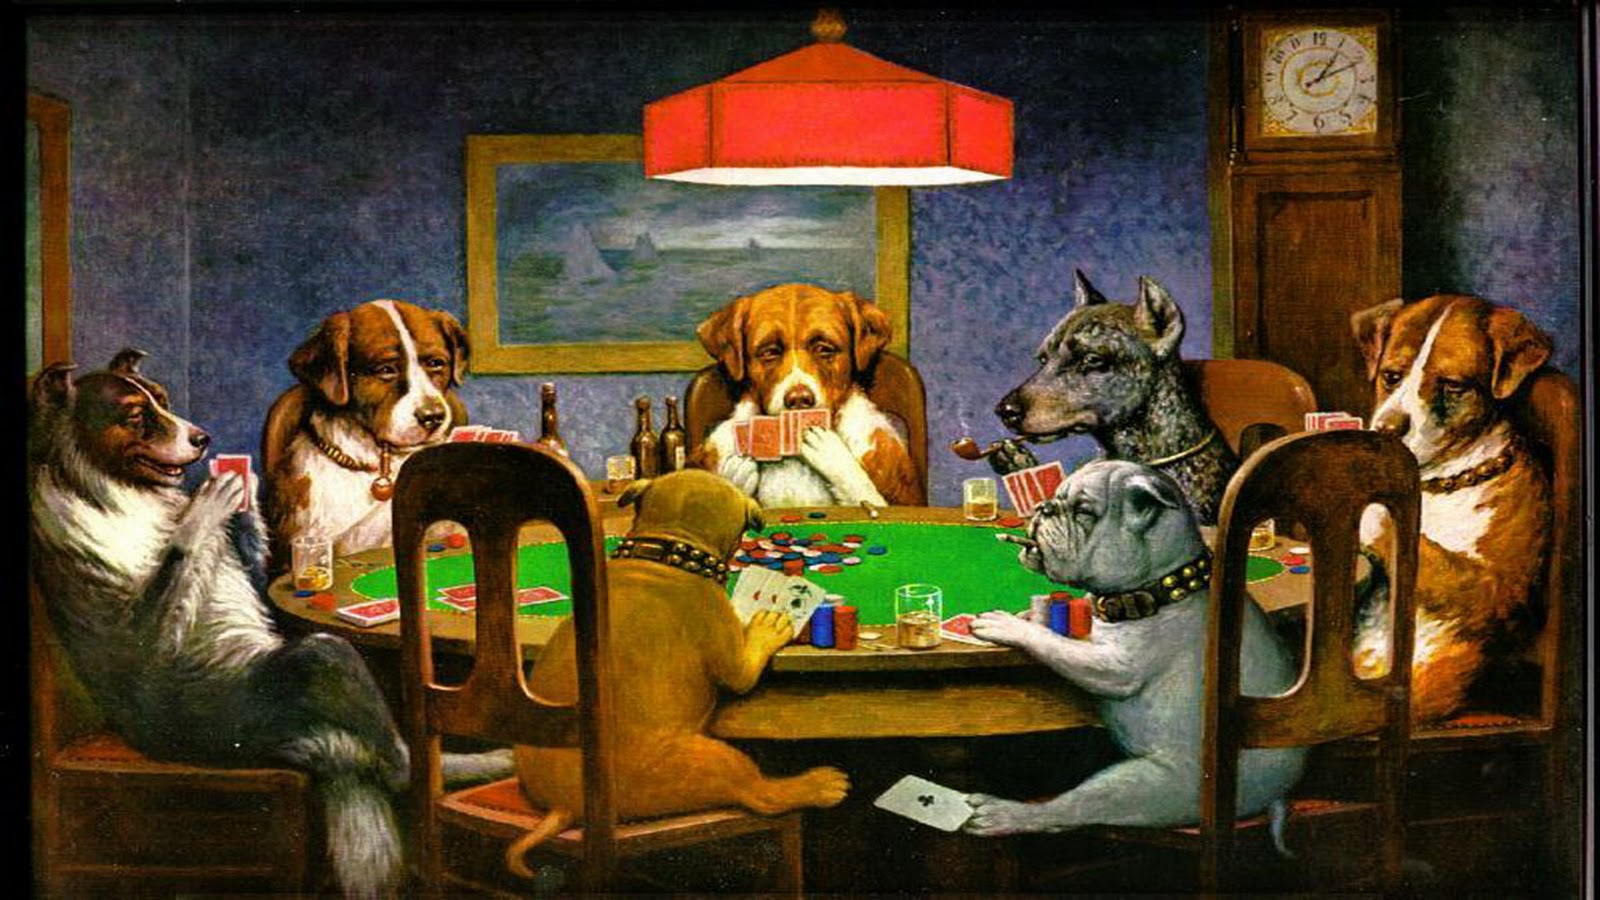 70+] Dogs Playing Poker Wallpaper - WallpaperSafari